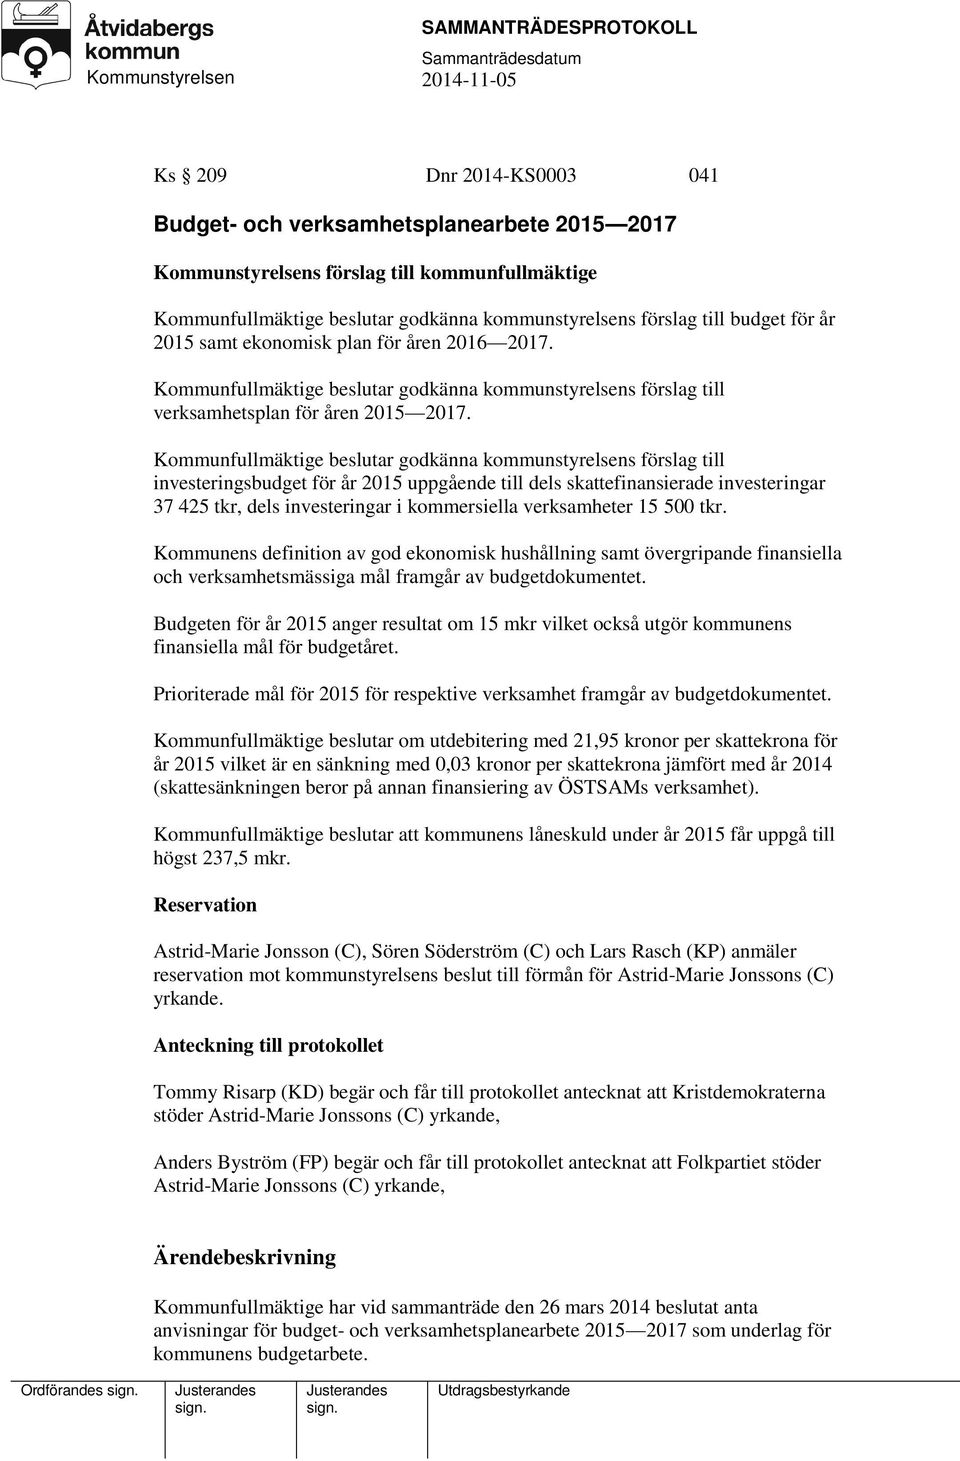 Kommunfullmäktige beslutar godkänna kommunstyrelsens förslag till investeringsbudget för år 2015 uppgående till dels skattefinansierade investeringar 37 425 tkr, dels investeringar i kommersiella